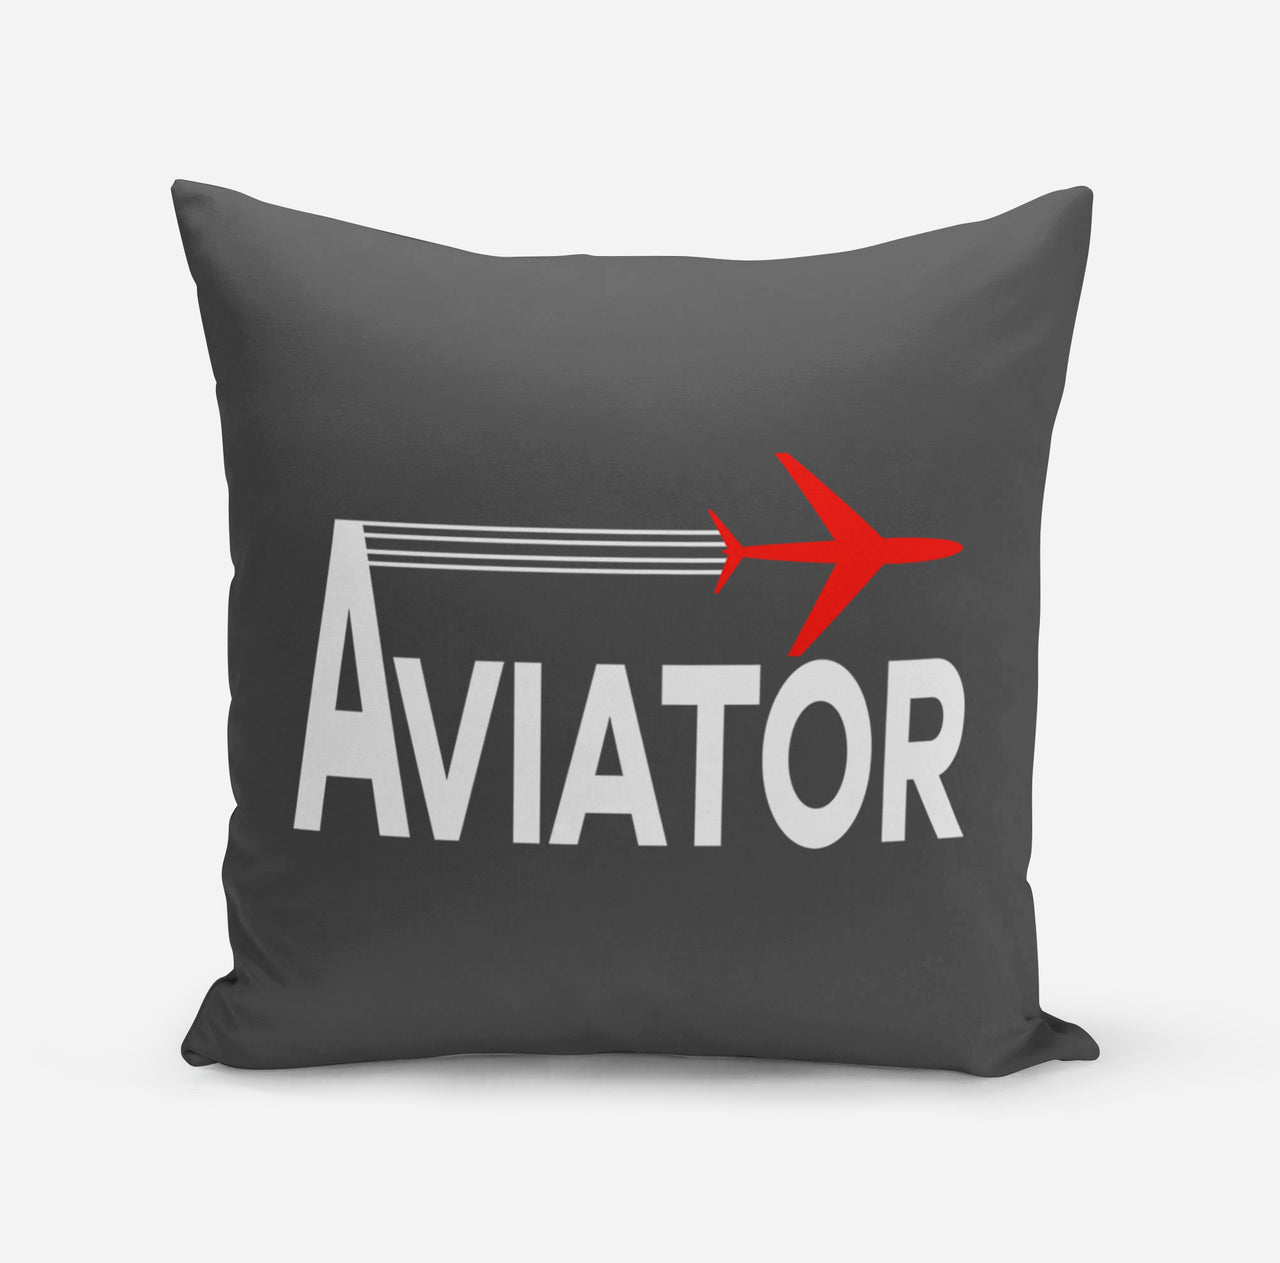 Aviator Designed Pillows